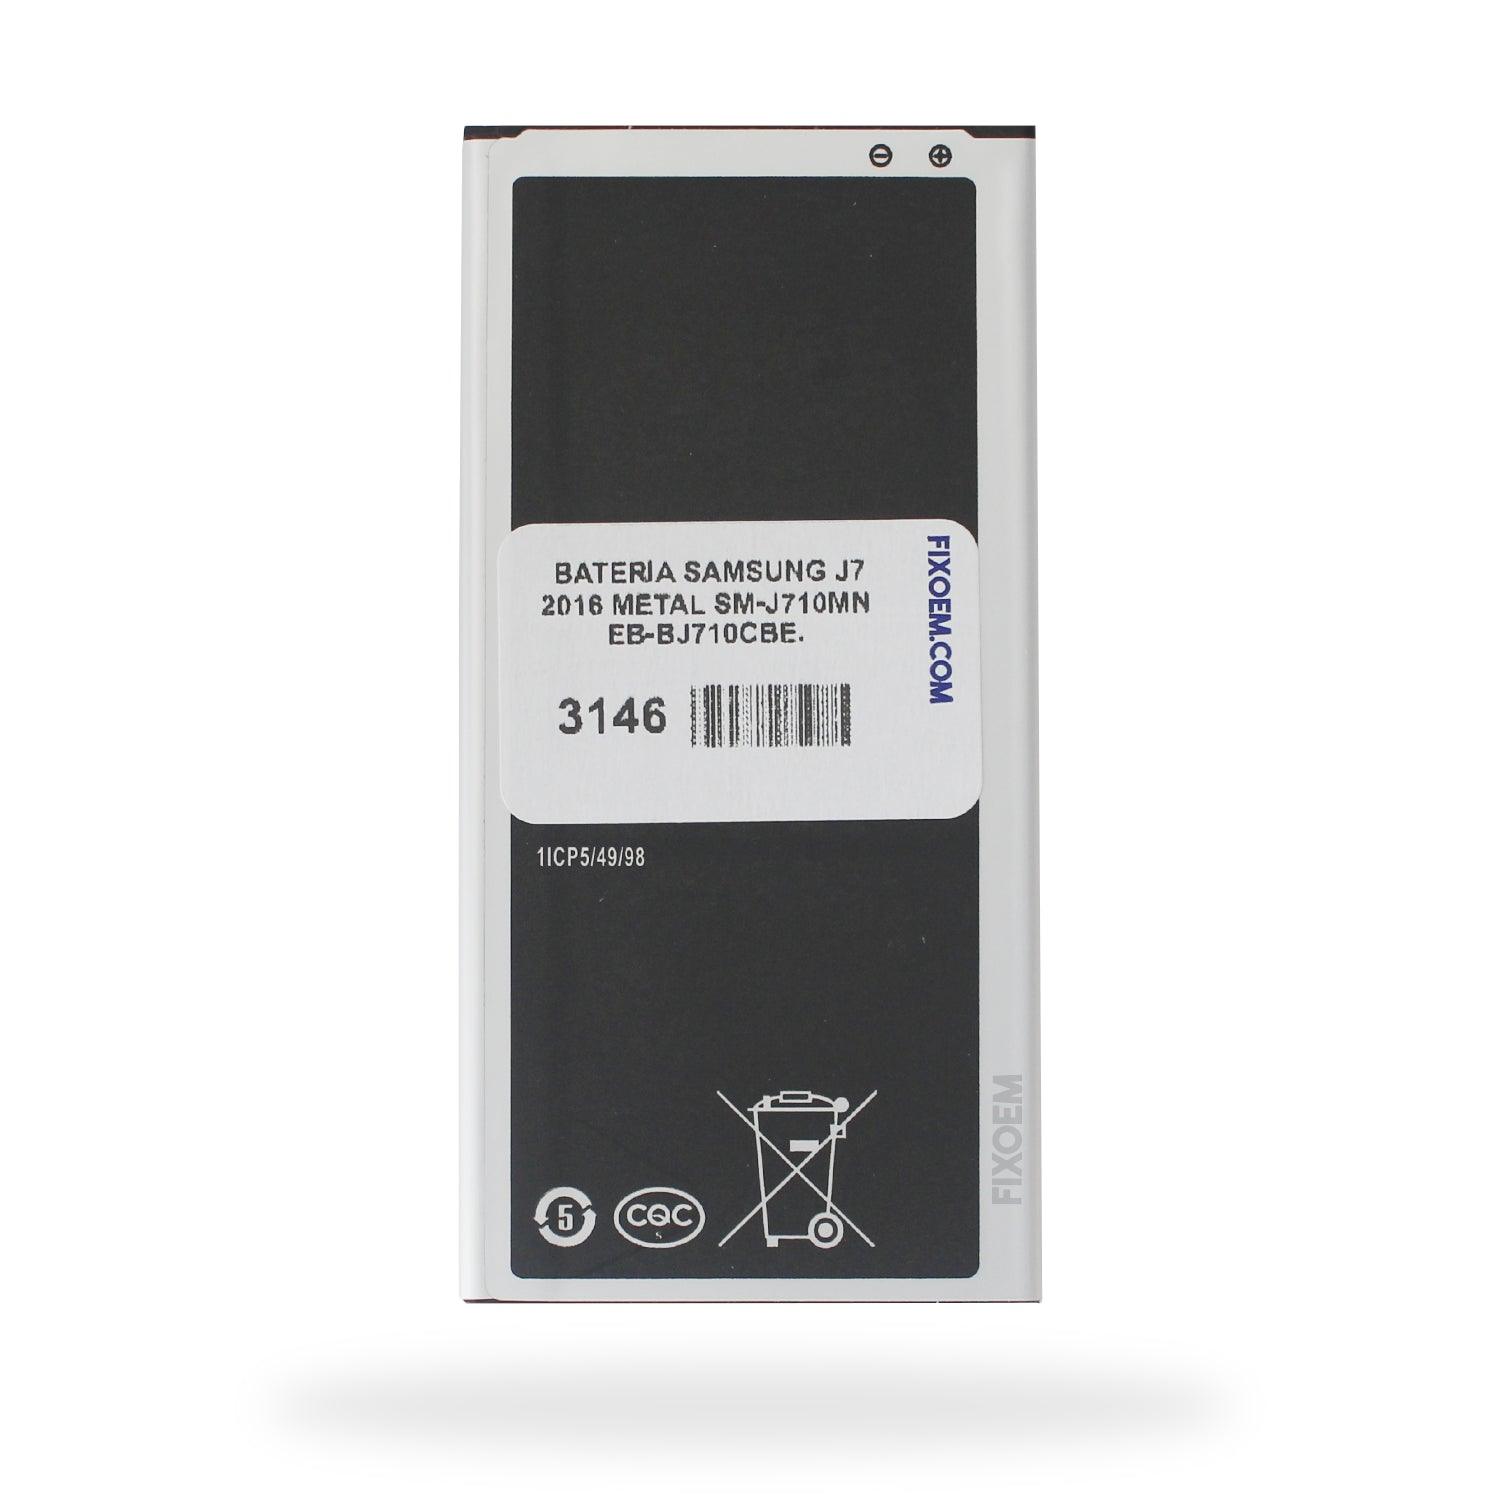 Bateria Samsung J7 2016 Metal Sm-J710MN Eb-Bj710Cbe. a solo $ 110.00 Refaccion y puestos celulares, refurbish y microelectronica.- FixOEM